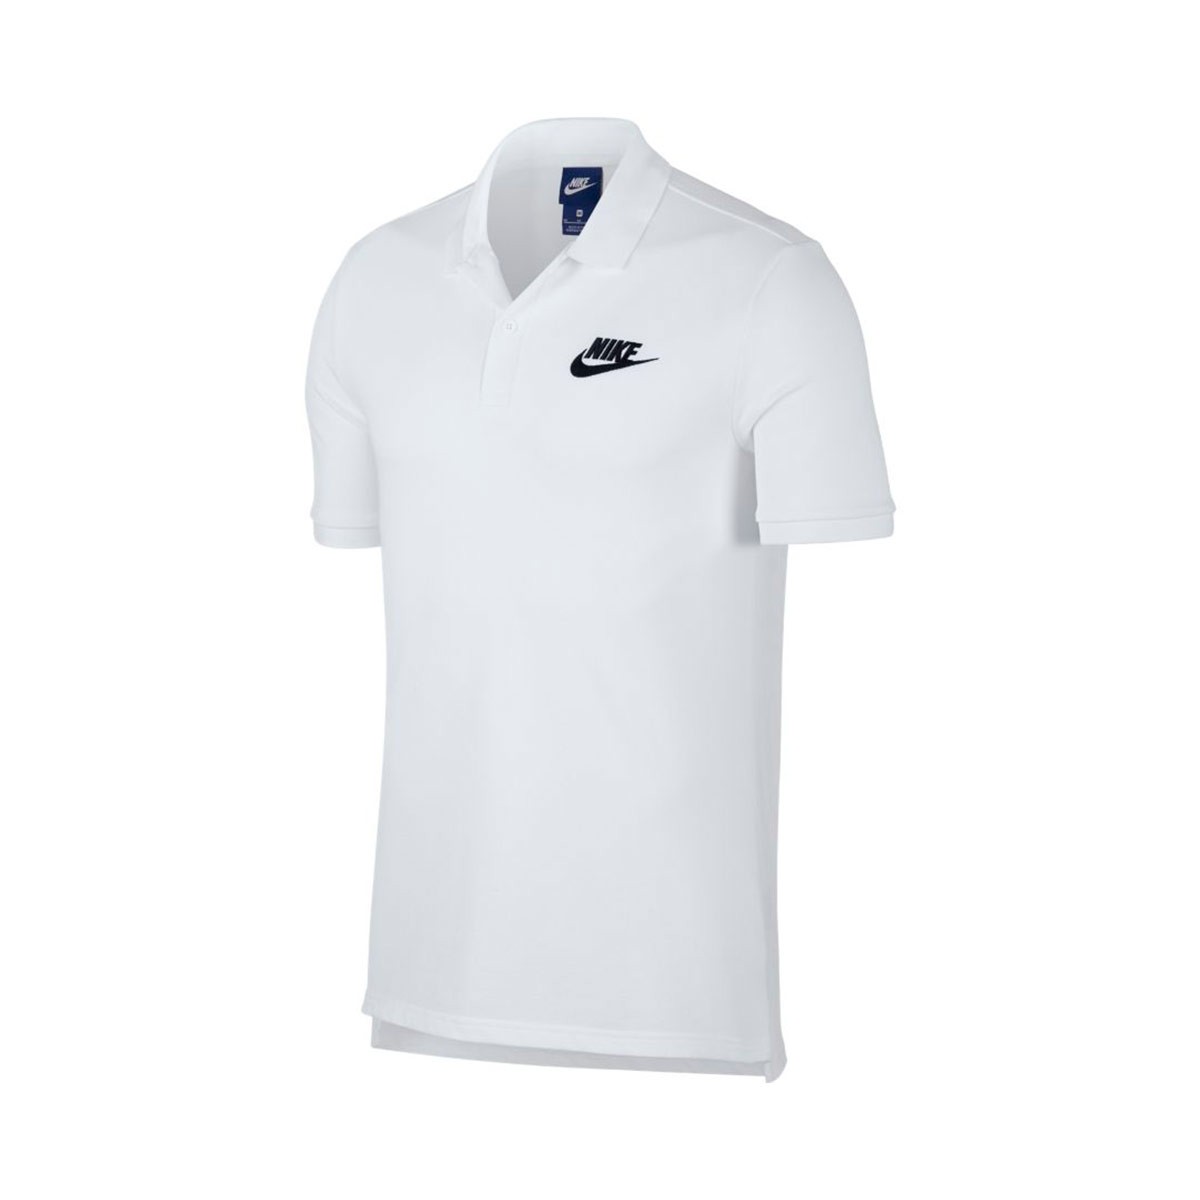 Polo Nike Sportswear 2019 White-Black - Negozio di calcio Fútbol Emotion